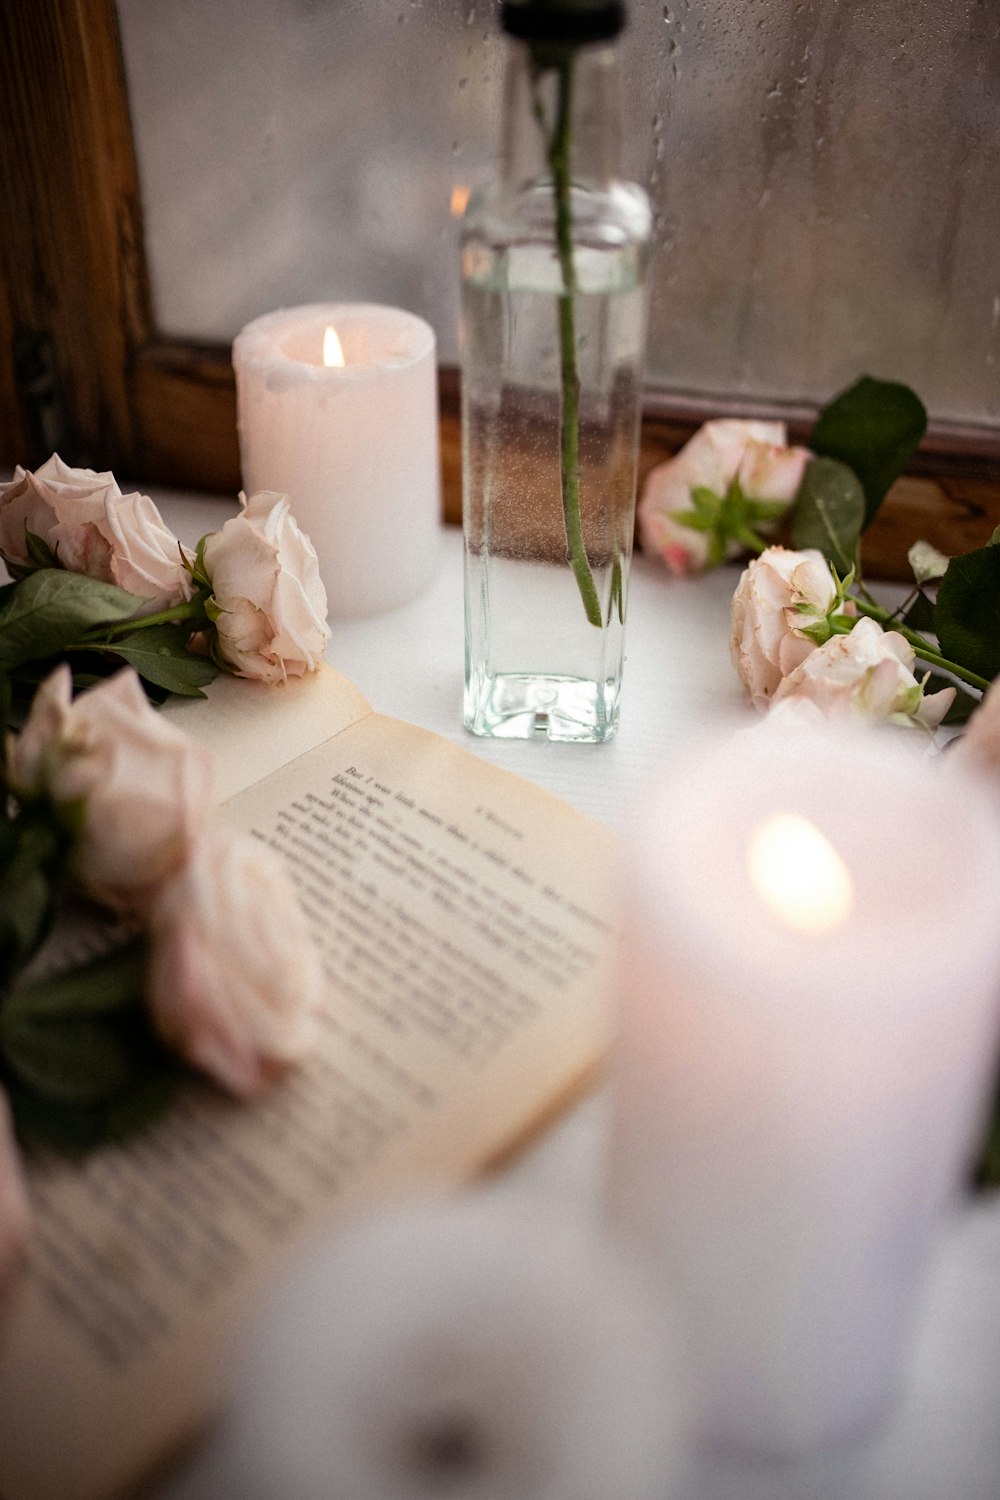 책과 꽃으로 가득 찬 꽃병을 얹은 테이블